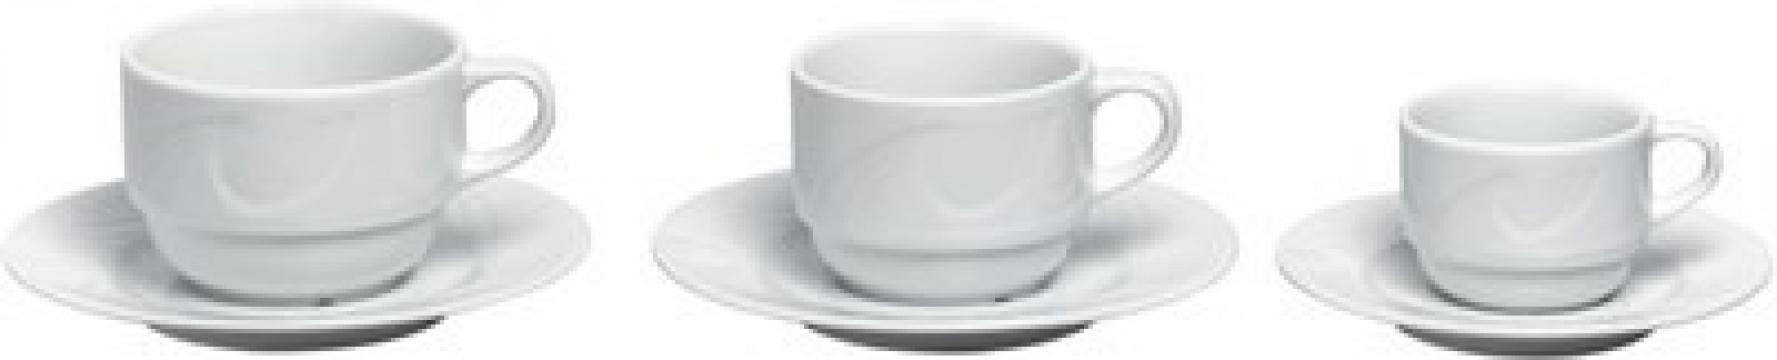 Ceasca pentru cafea 170 ml , portelan, gama Karizma de la Clever Services SRL